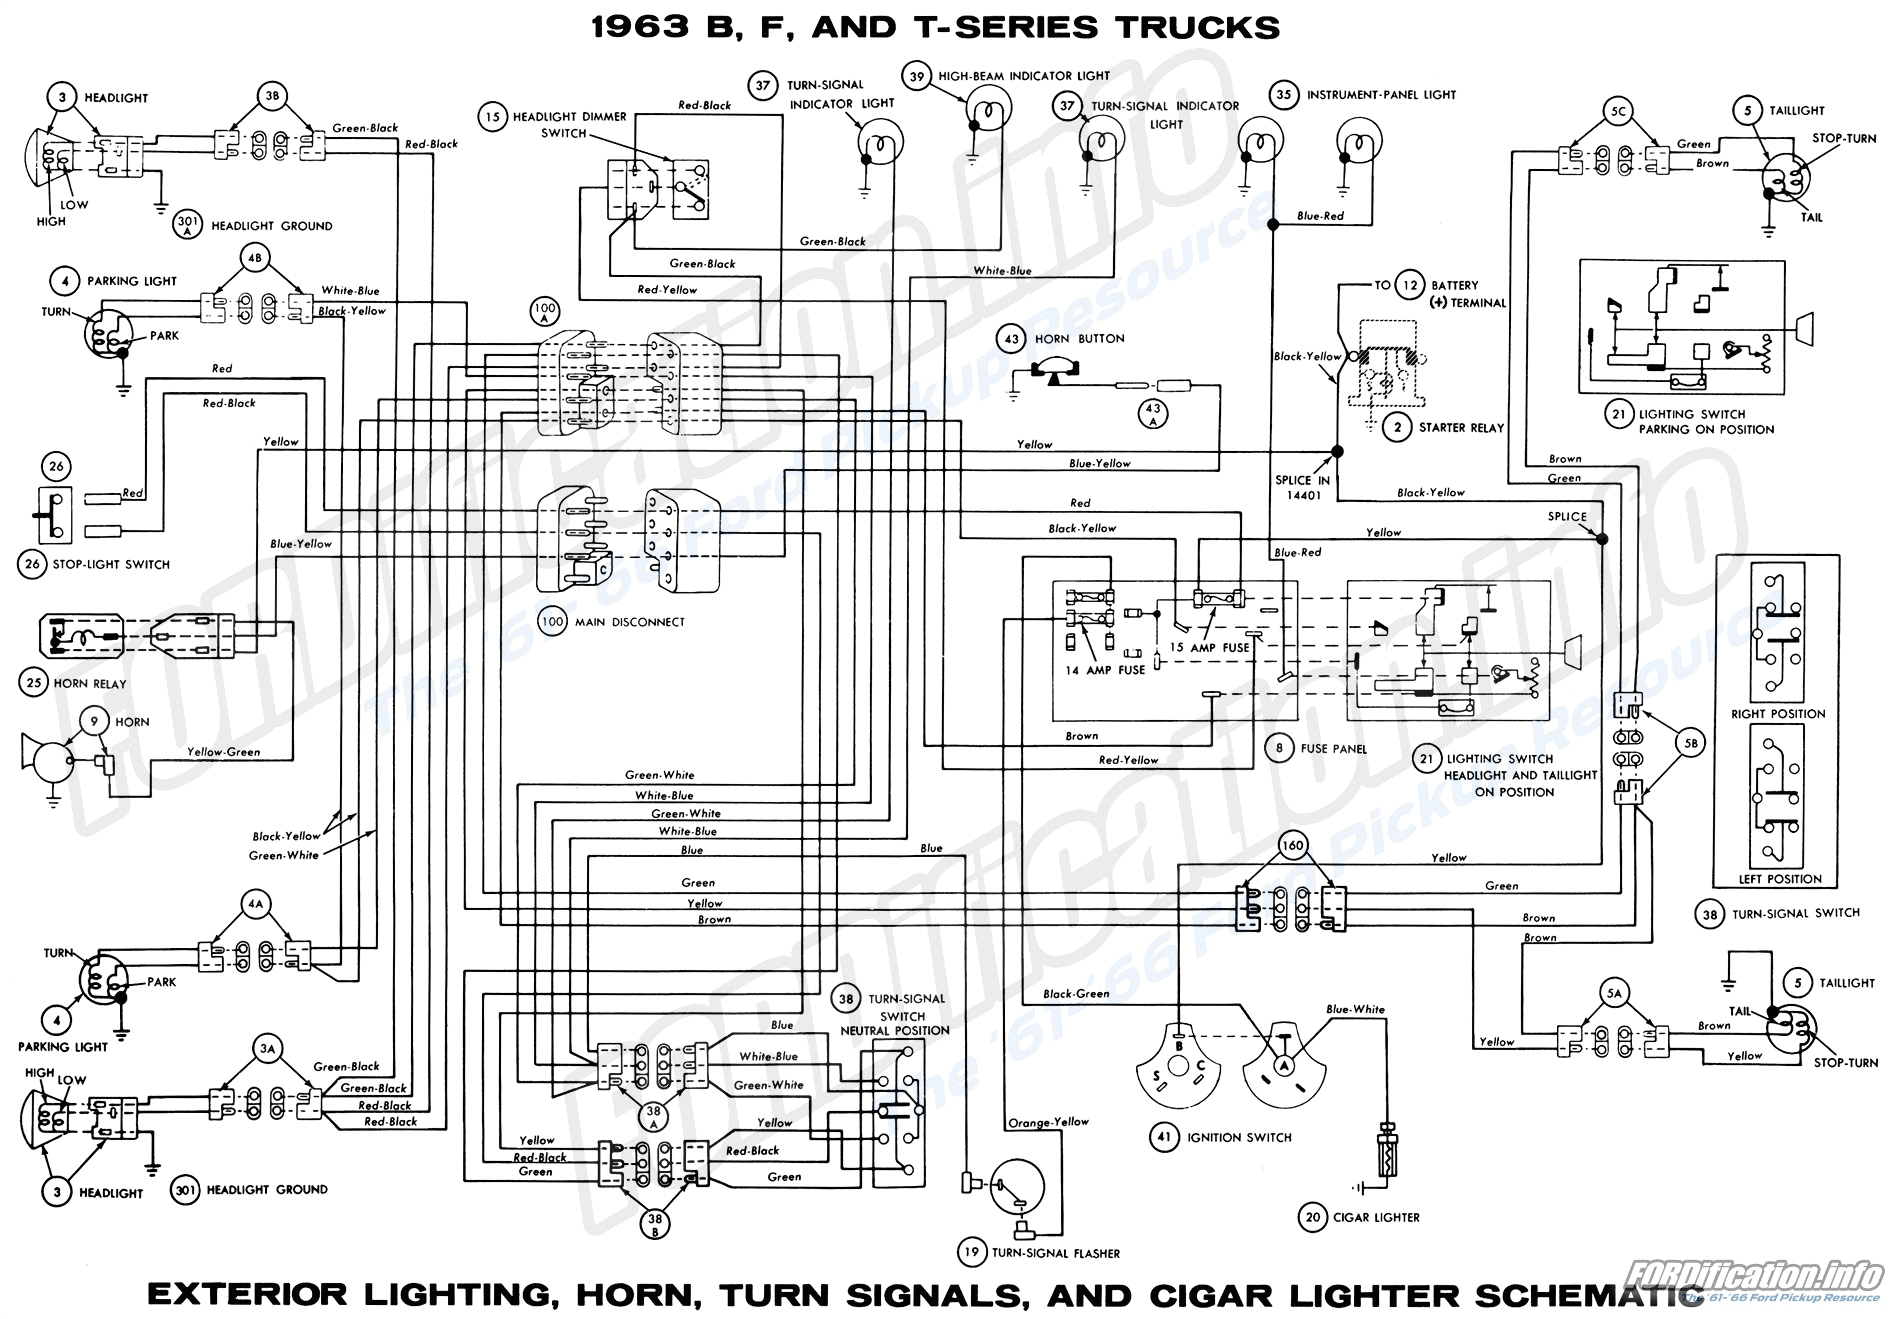 jcb 212 wiring schematic wiring diagram jcb 3cx wiring diagram pdf jcb backhoe wiring schematics